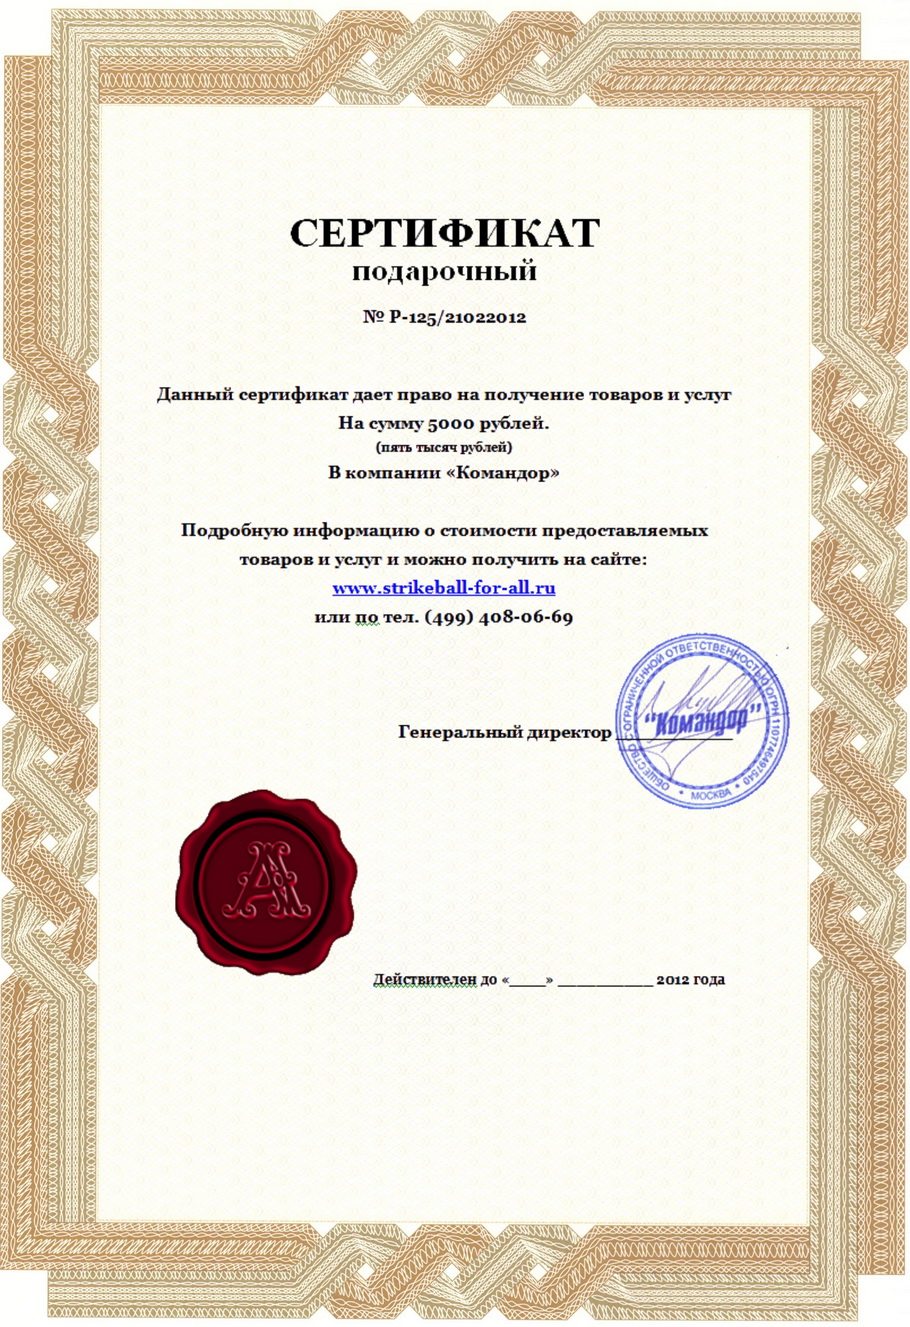 Подарочный сертификат магазина страйкбольного оужия и снаряжения "Командор"